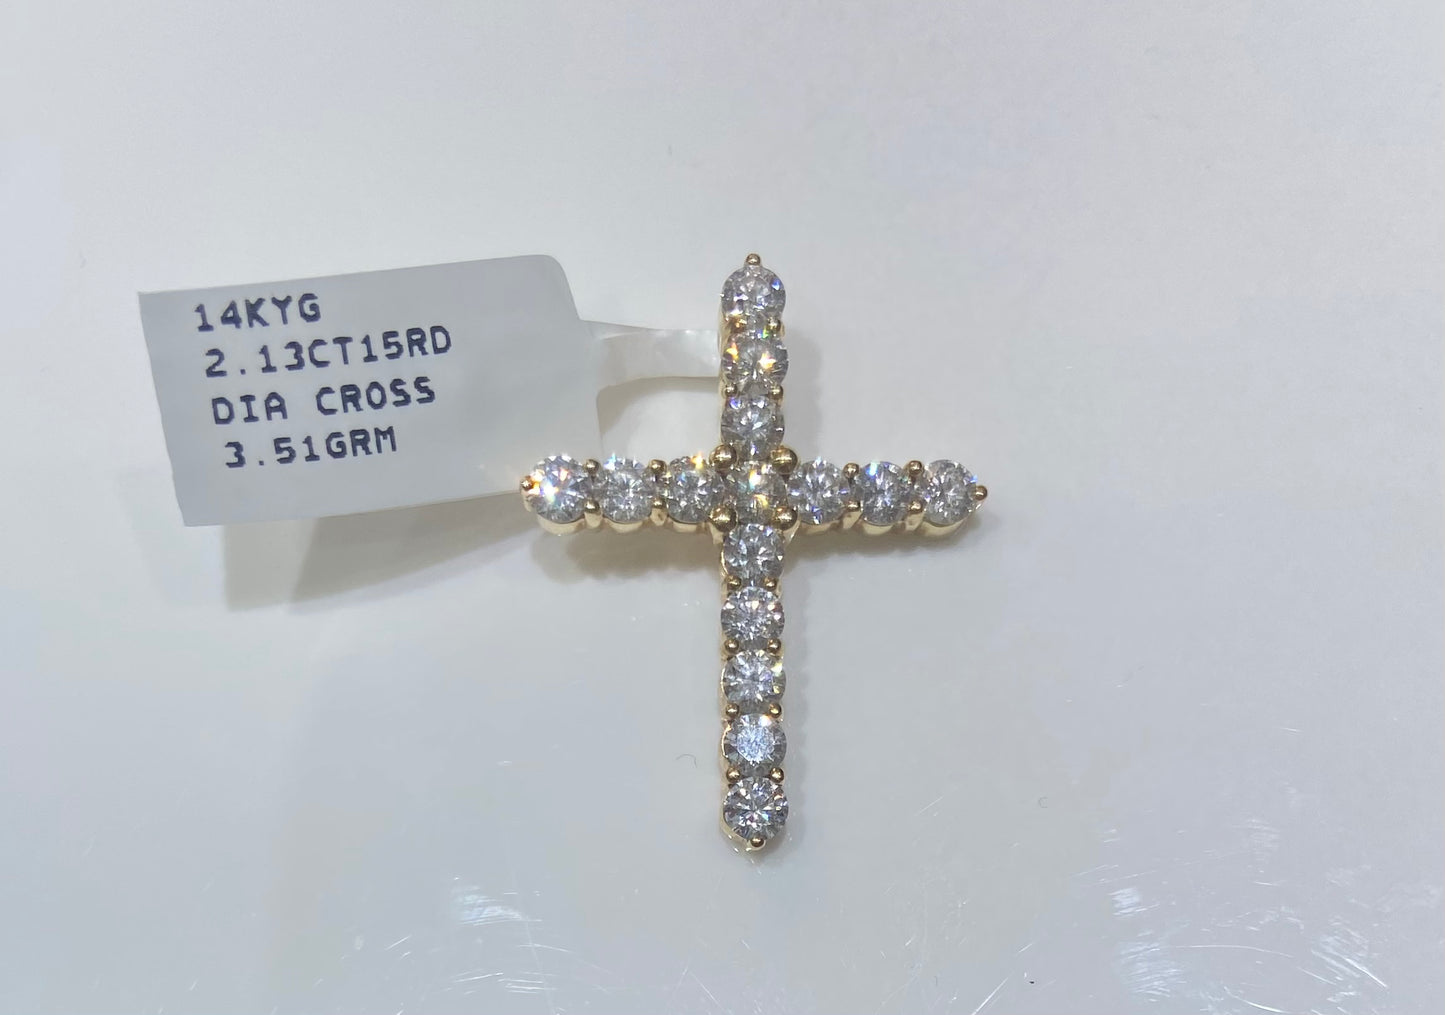 14K Yellow Gold 2.13CT 15Round Diamond Cross Charm